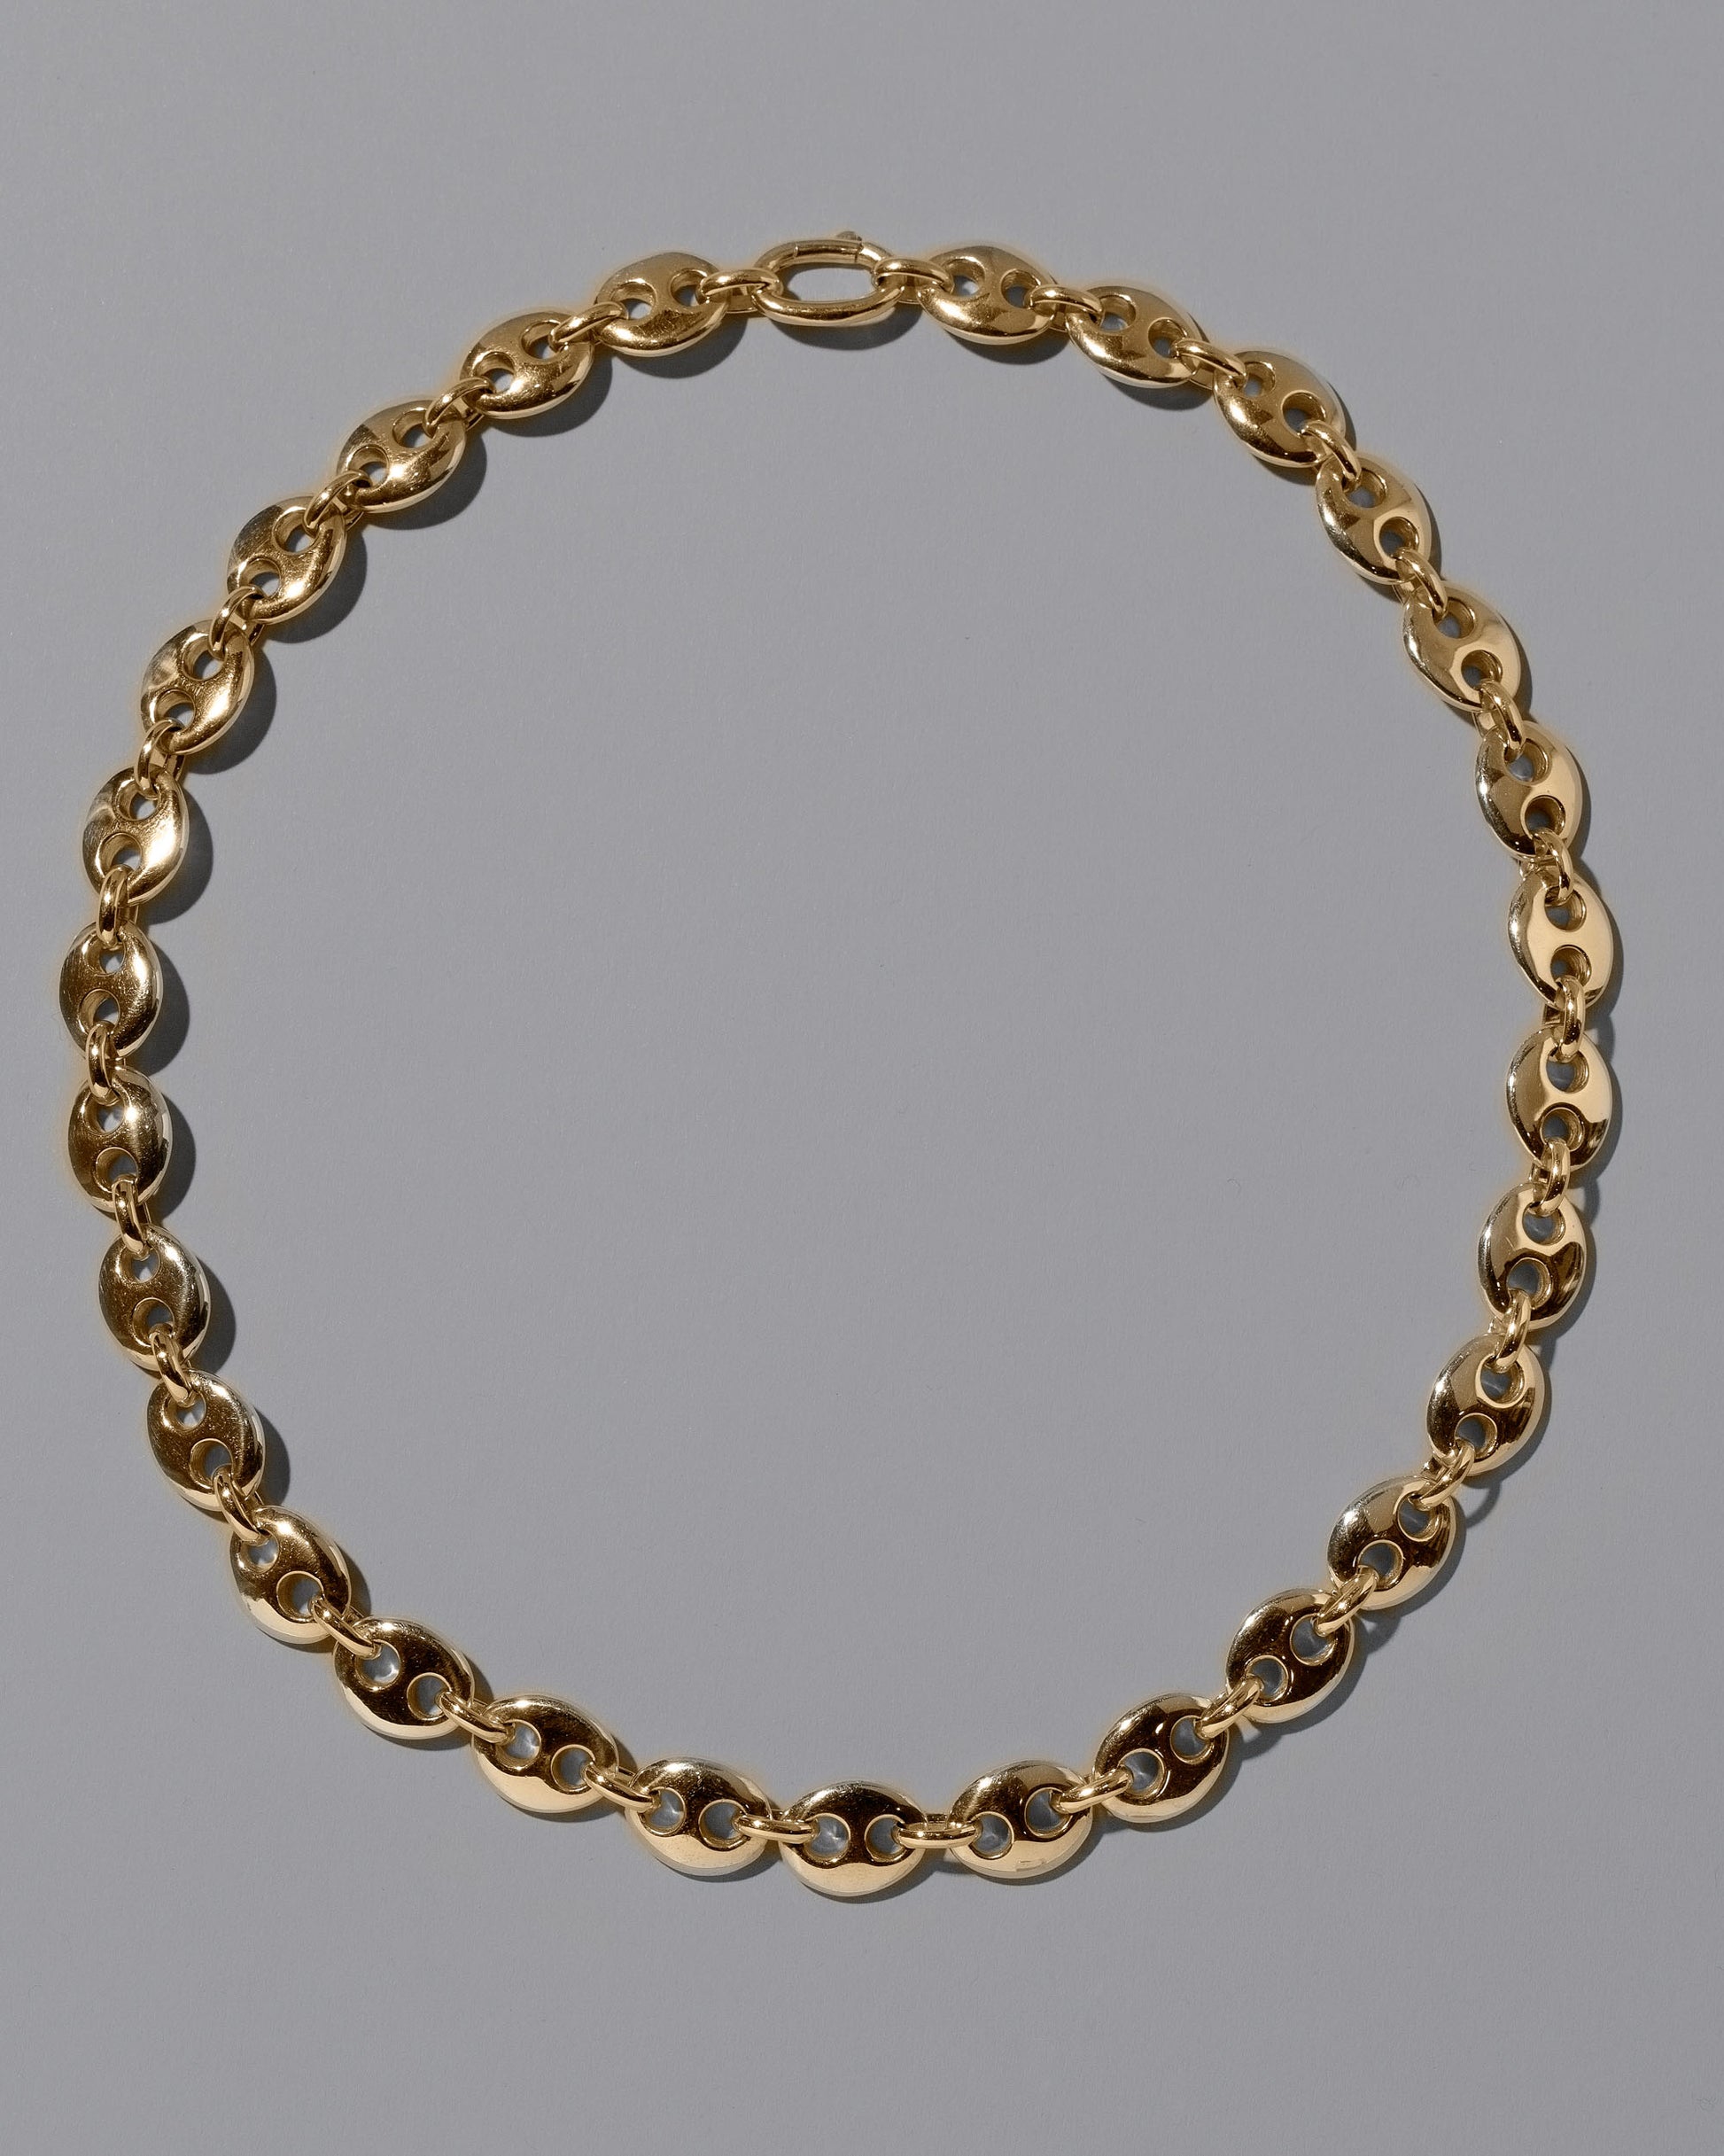 CRZM 22k Gold Bedrock Necklace on light color background.